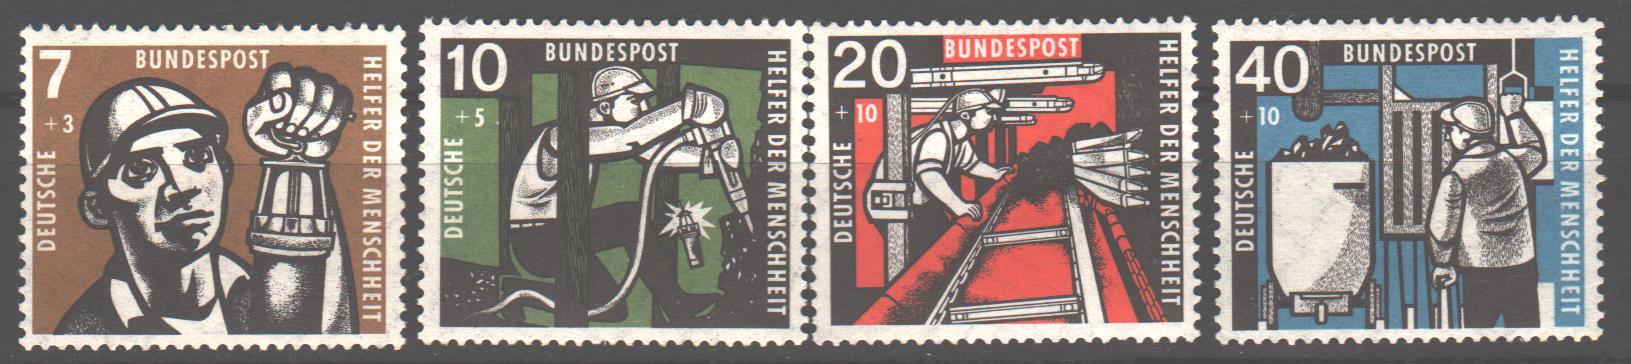 Продам марки Германии